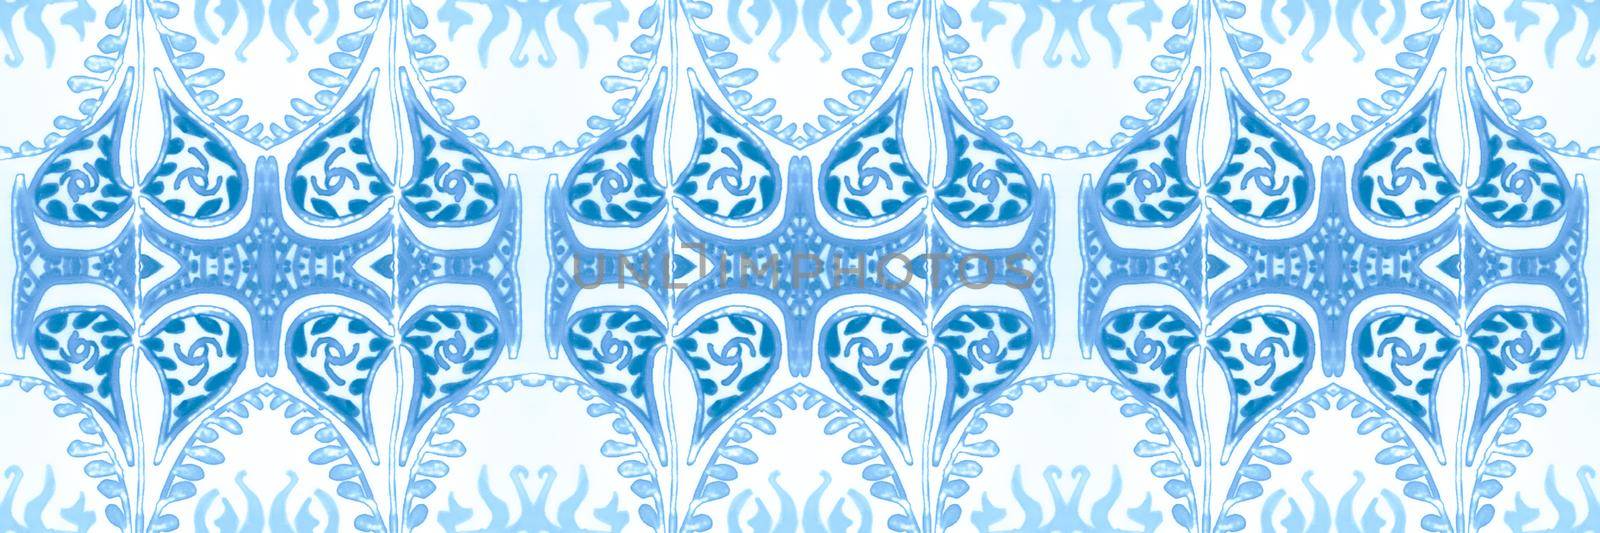 Italian majolica tile. Damask ethnic fabric. Retro vintage portuguese mosaic. Seamless azulejo ceramic. Floral portugal design. Watercolor majolica. Majolica ornament.